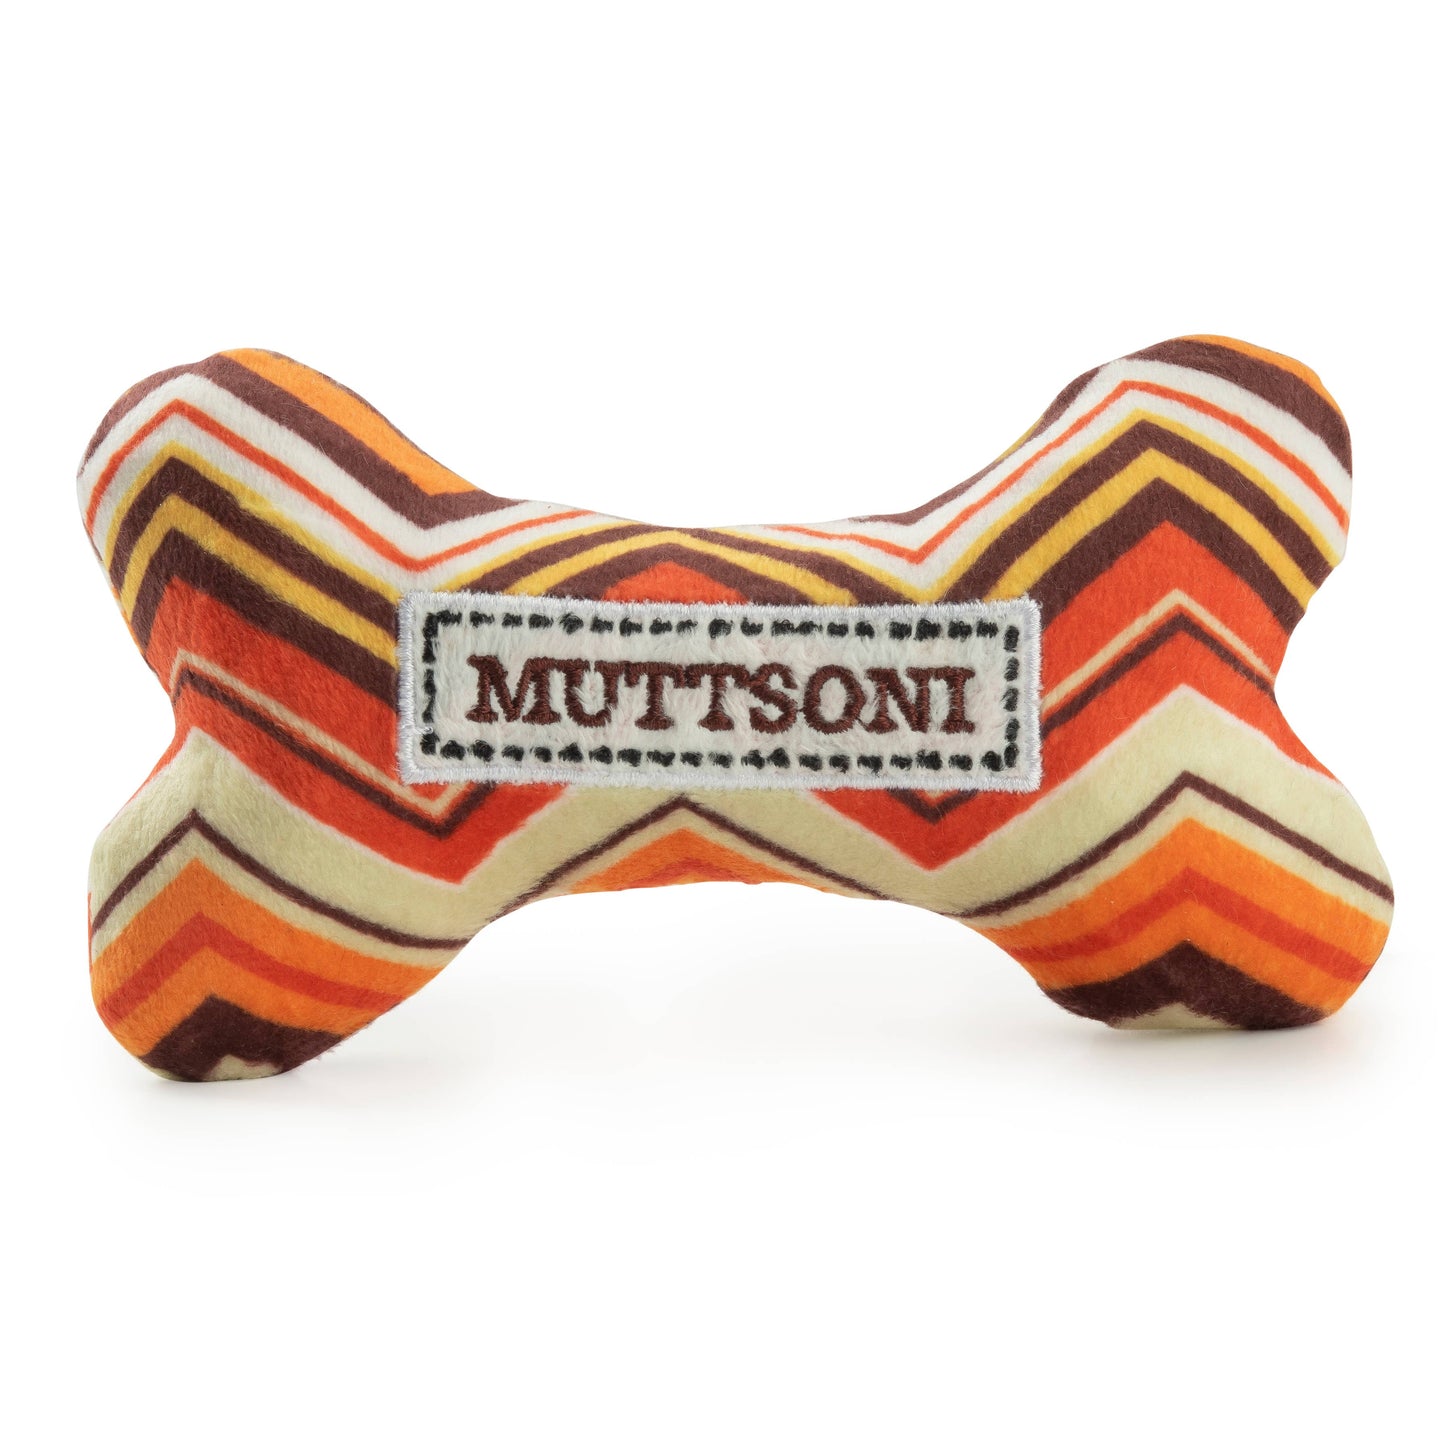 Muttsoni Bone Squeaker